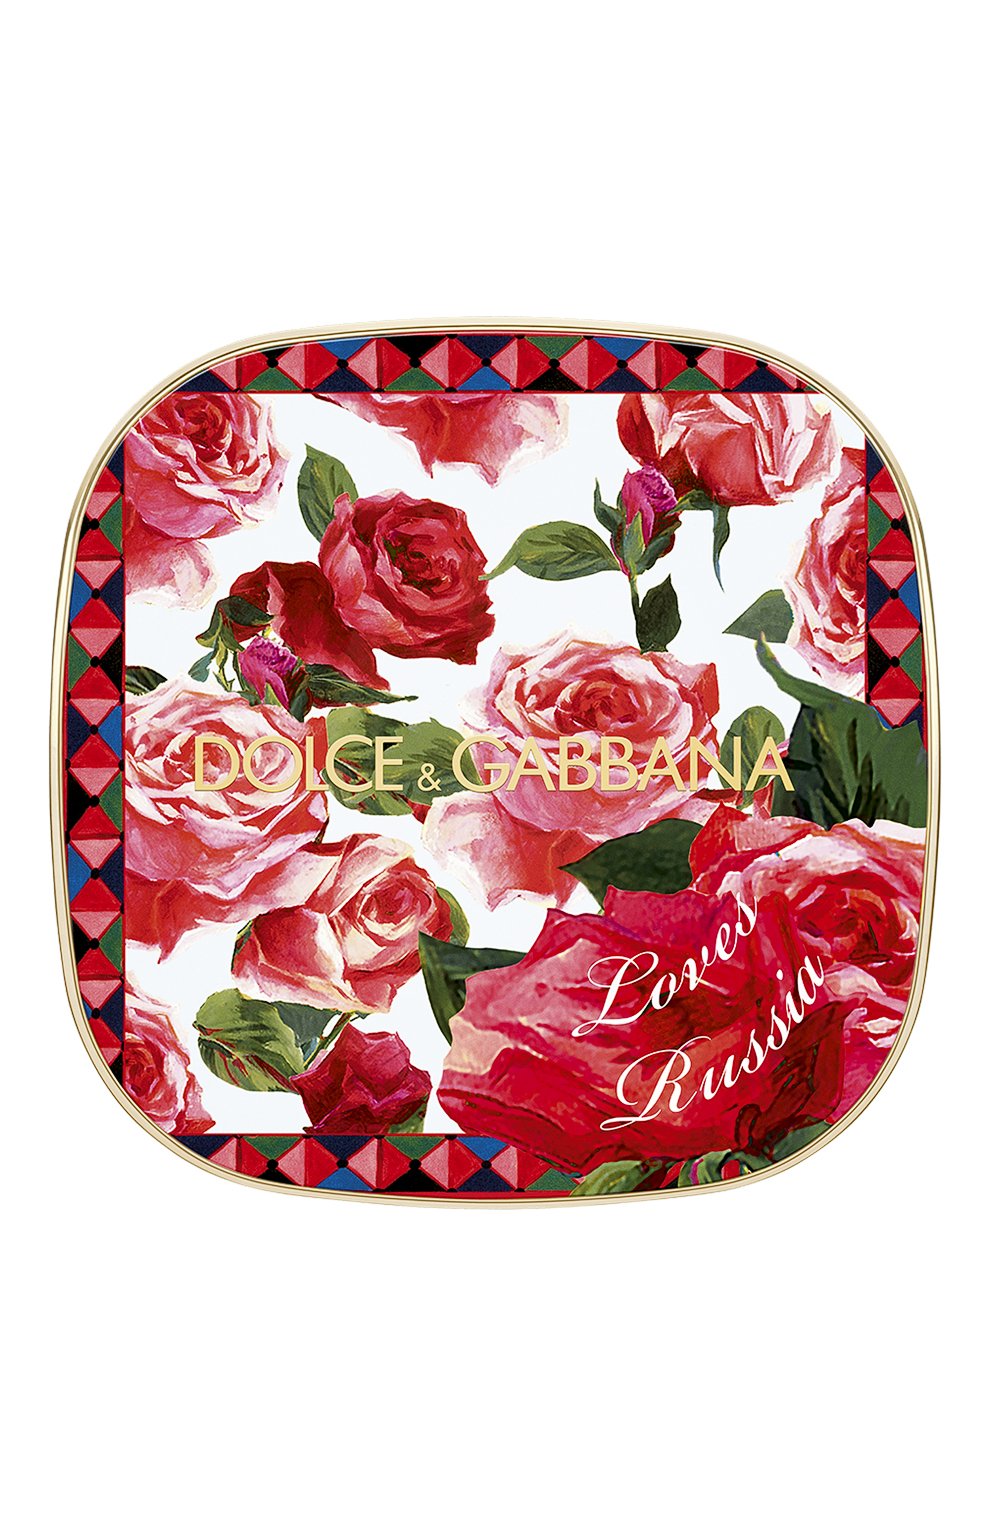 Румяна с эффектом сияния blush of roses dg loves russia, 200 provocative (5g) DOLCE & GABBANA  цвета, арт. 30701092DG | Фото 2